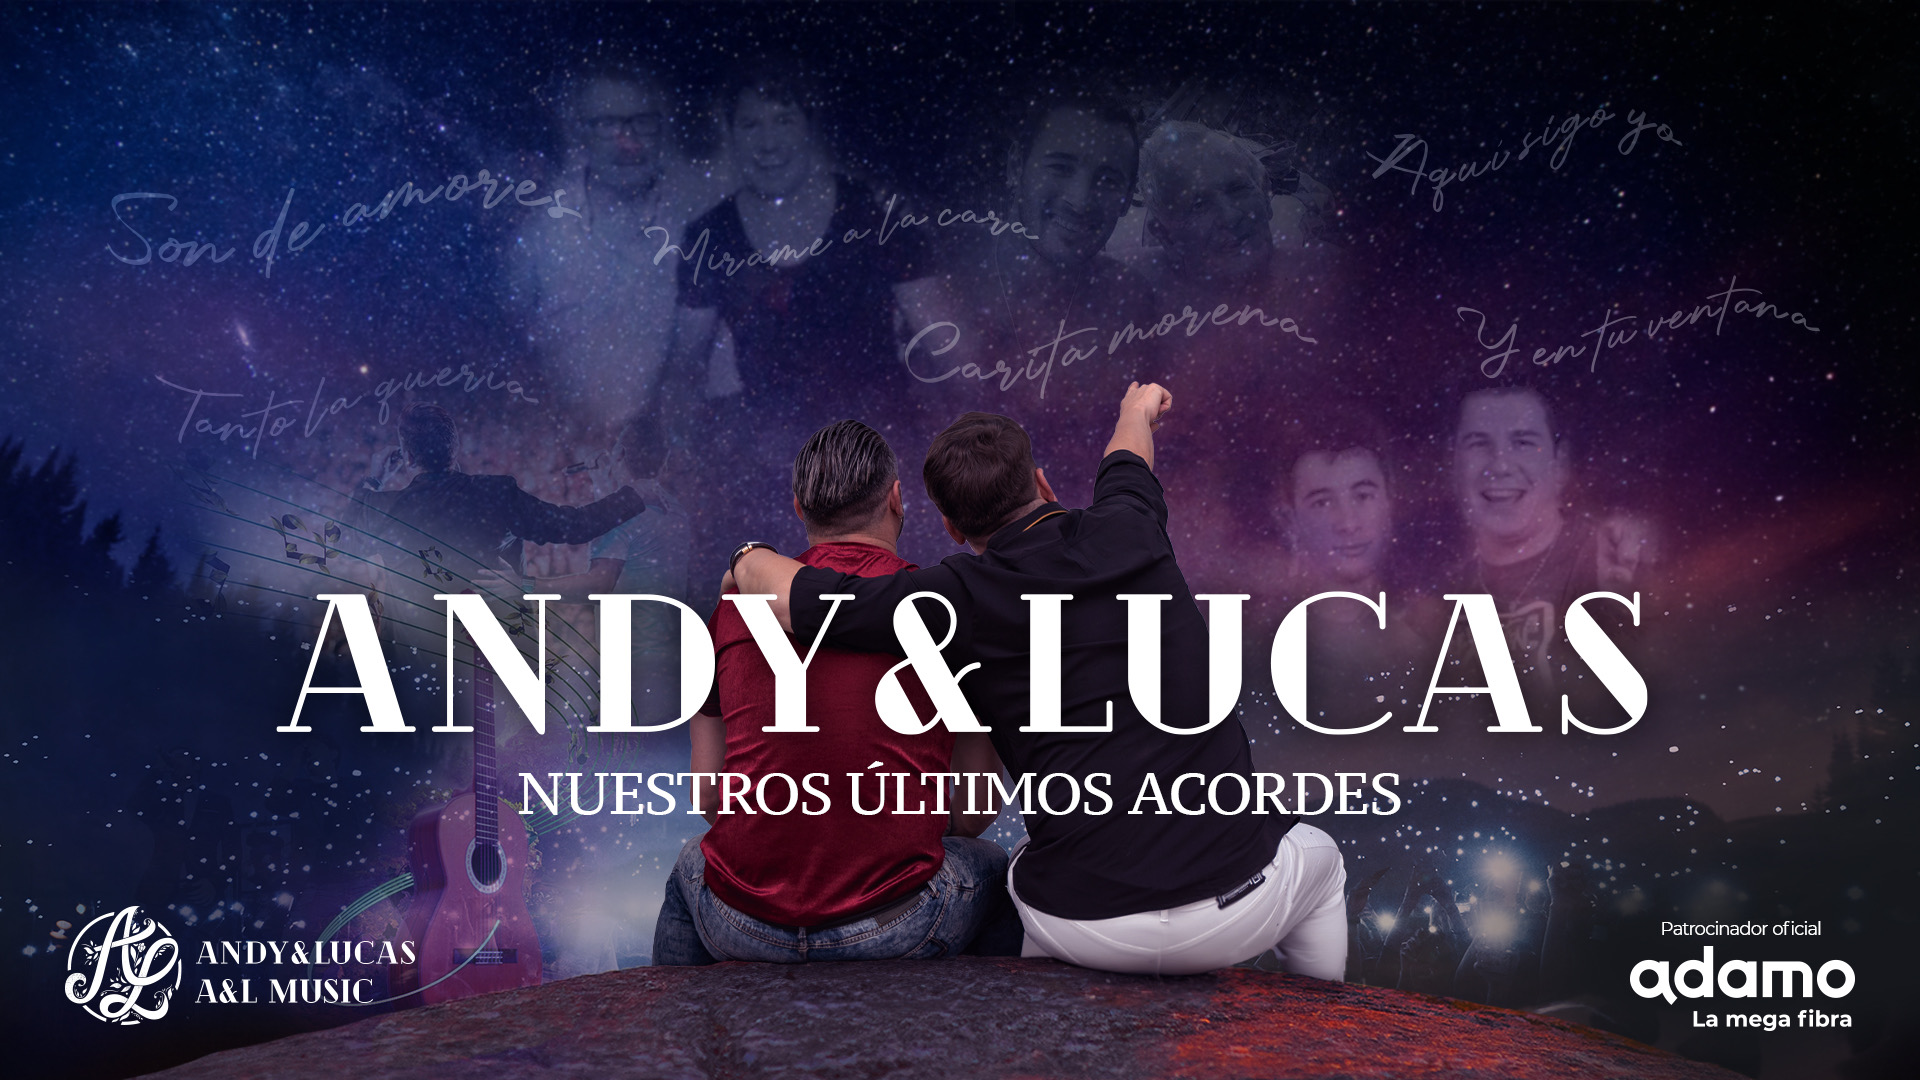 andy-y-lucas-nuestros-ultimos-acordes-en-valencia-65b0ebdd971348.31364340.jpeg